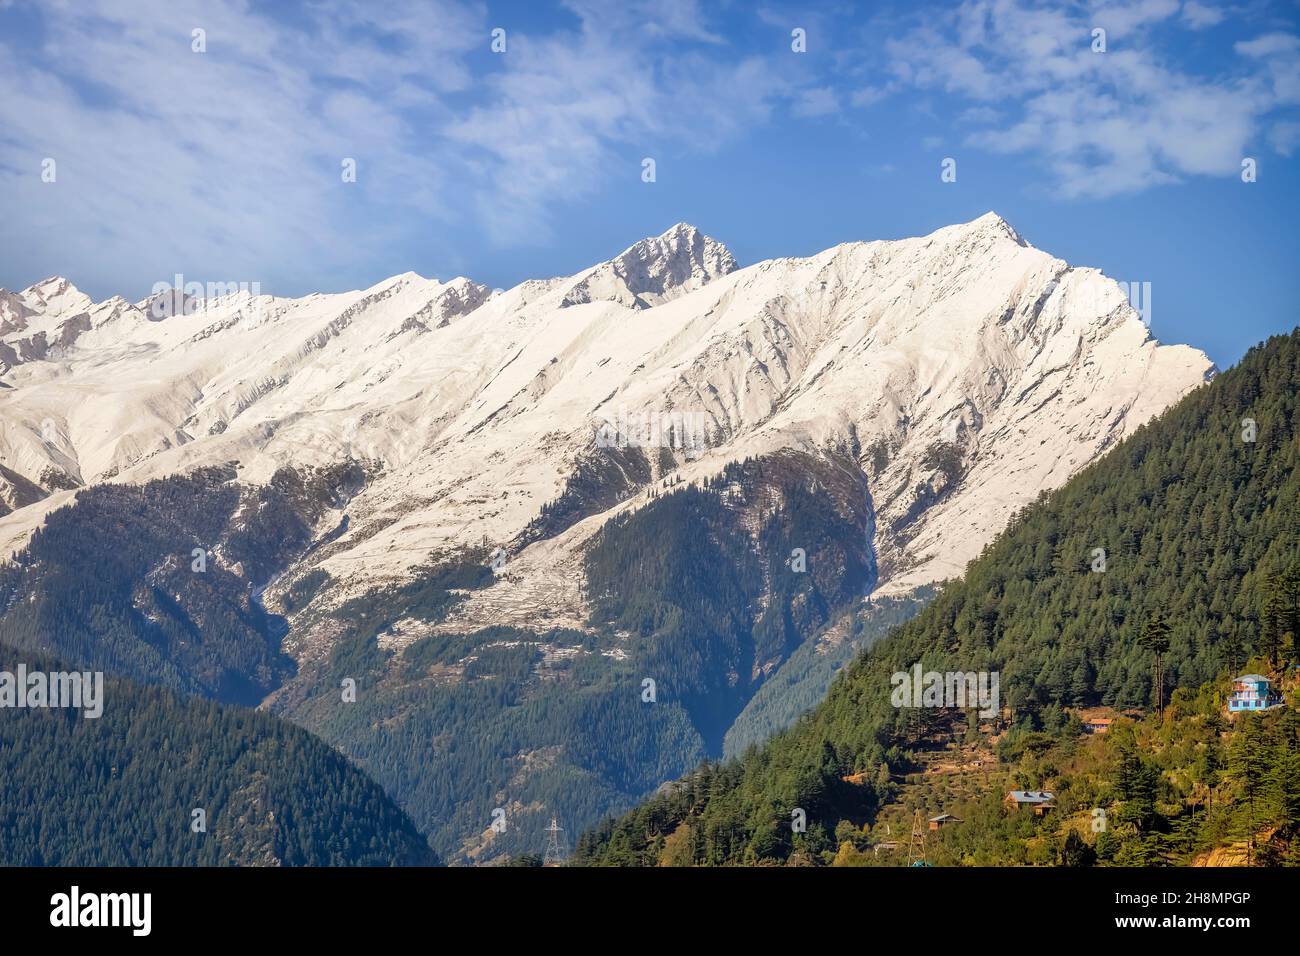 Paysage pittoresque à la station de colline de Kalpa de l'Himachal Pradesh avec des forêts sur les pentes de montagne et vue sur la majestueuse chaîne de Kinnaur Kailash Himalaya Banque D'Images